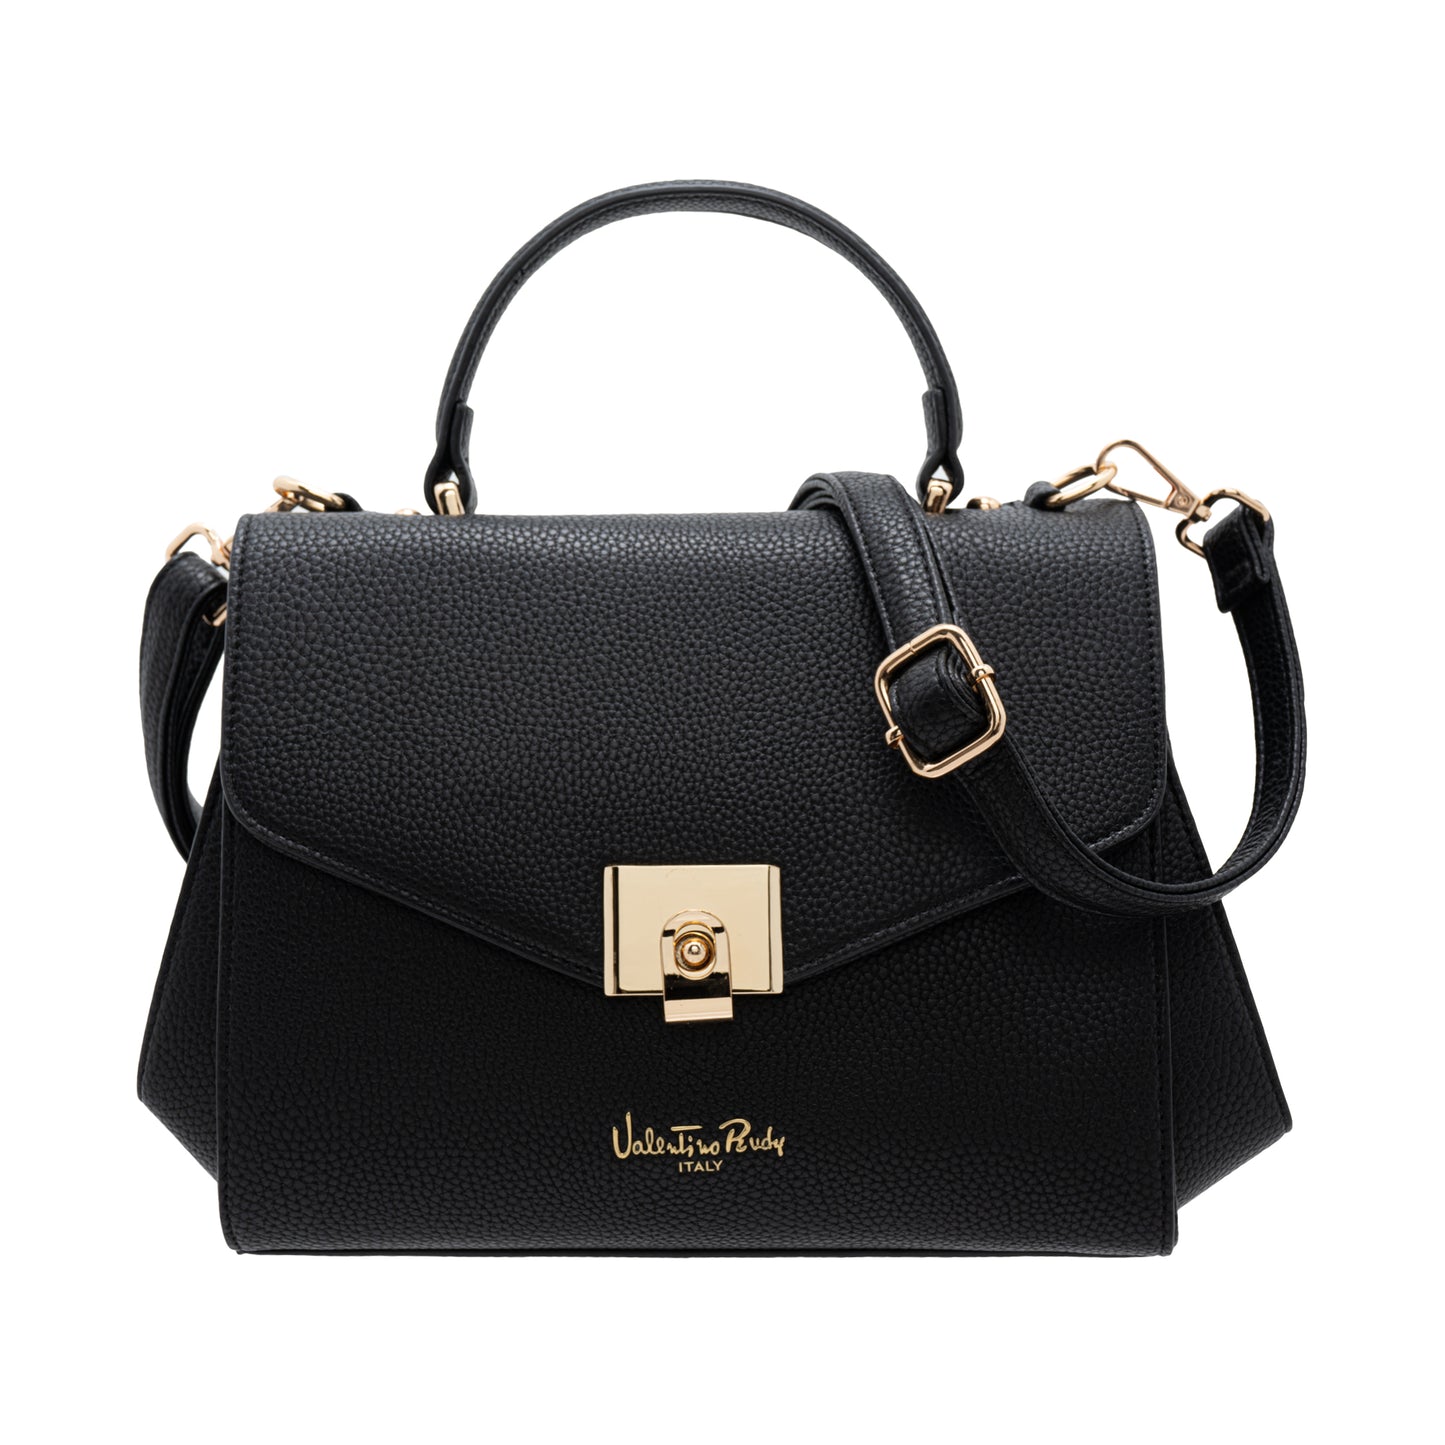 Valentino Rudy Italy Ladies Top Handle Bag